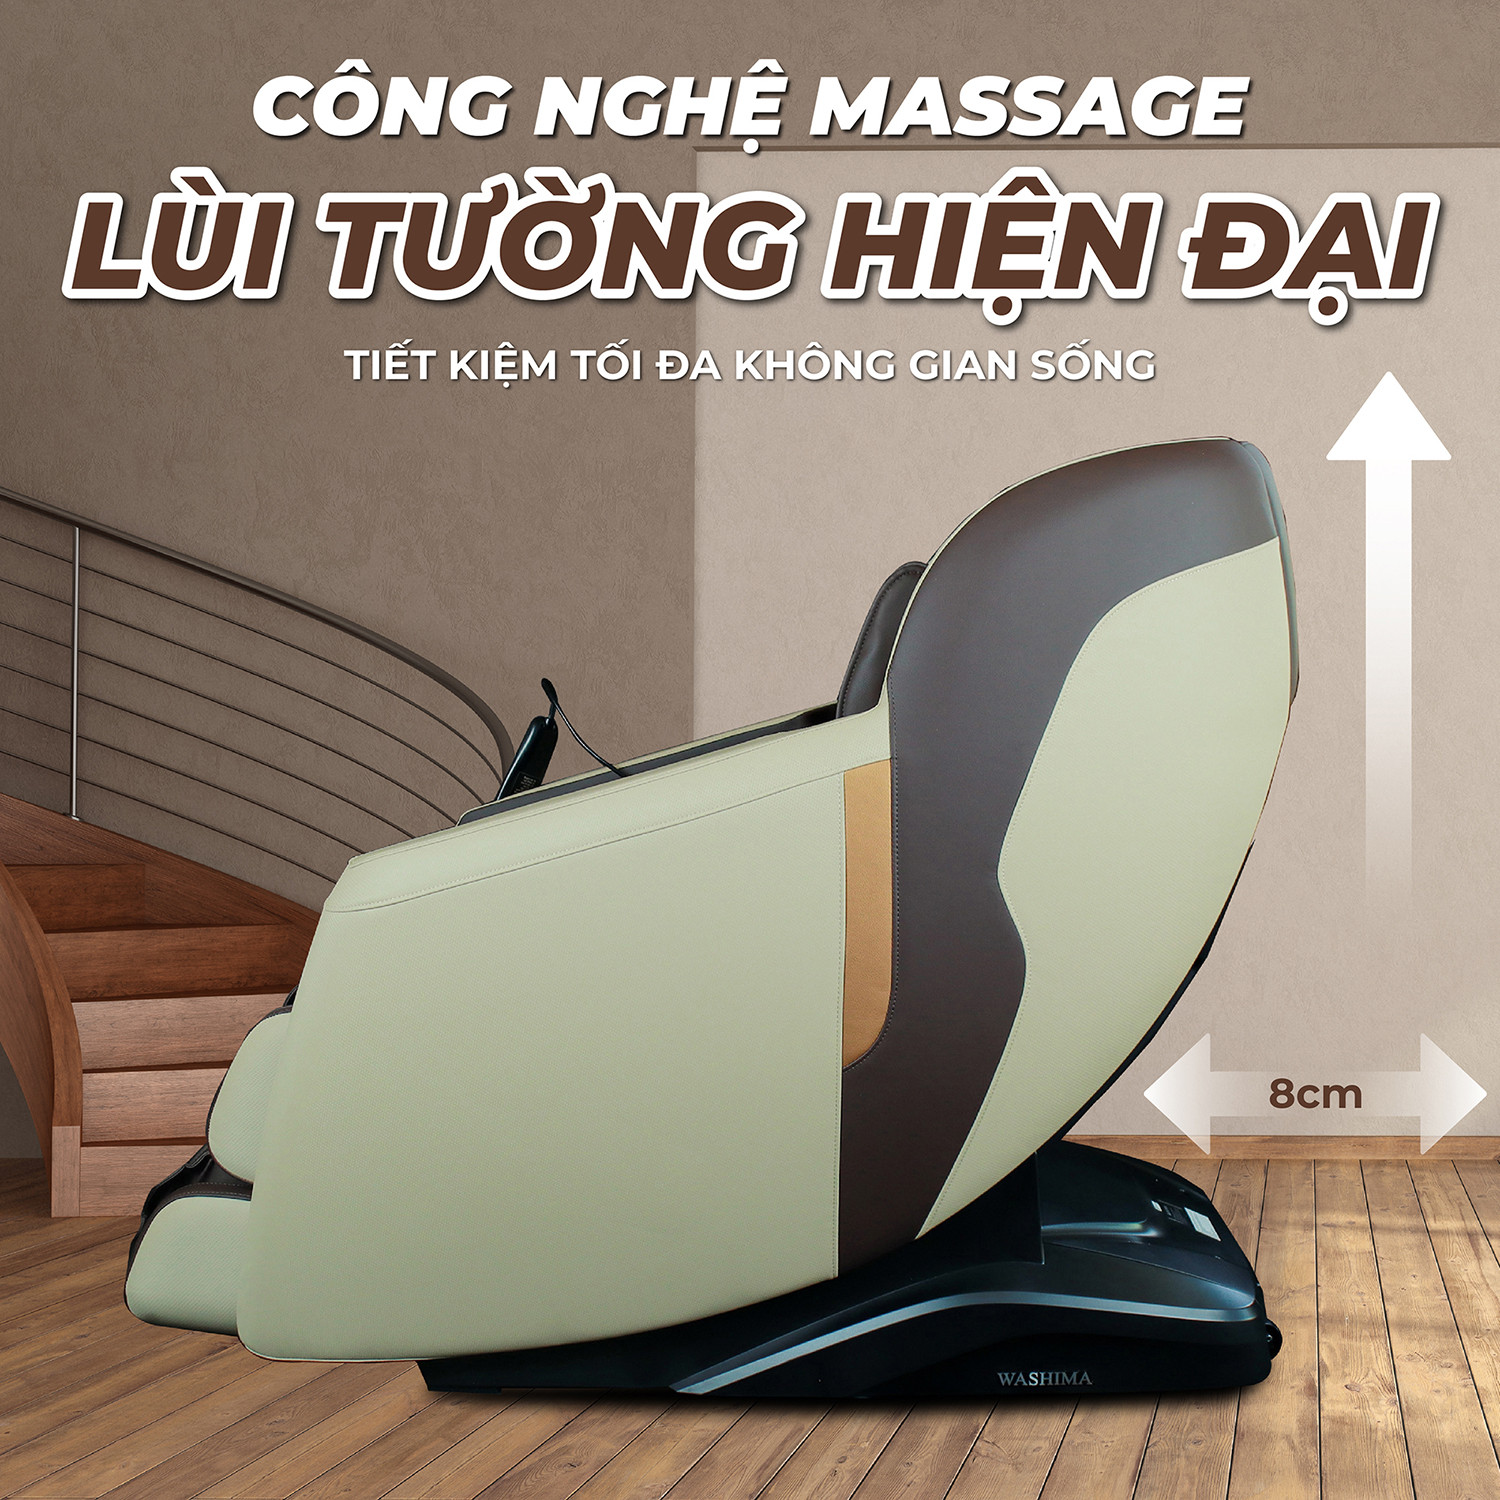 Công nghệ lùi tường giúp tiết kiệm diện tích không gian massage tại nhà bạn